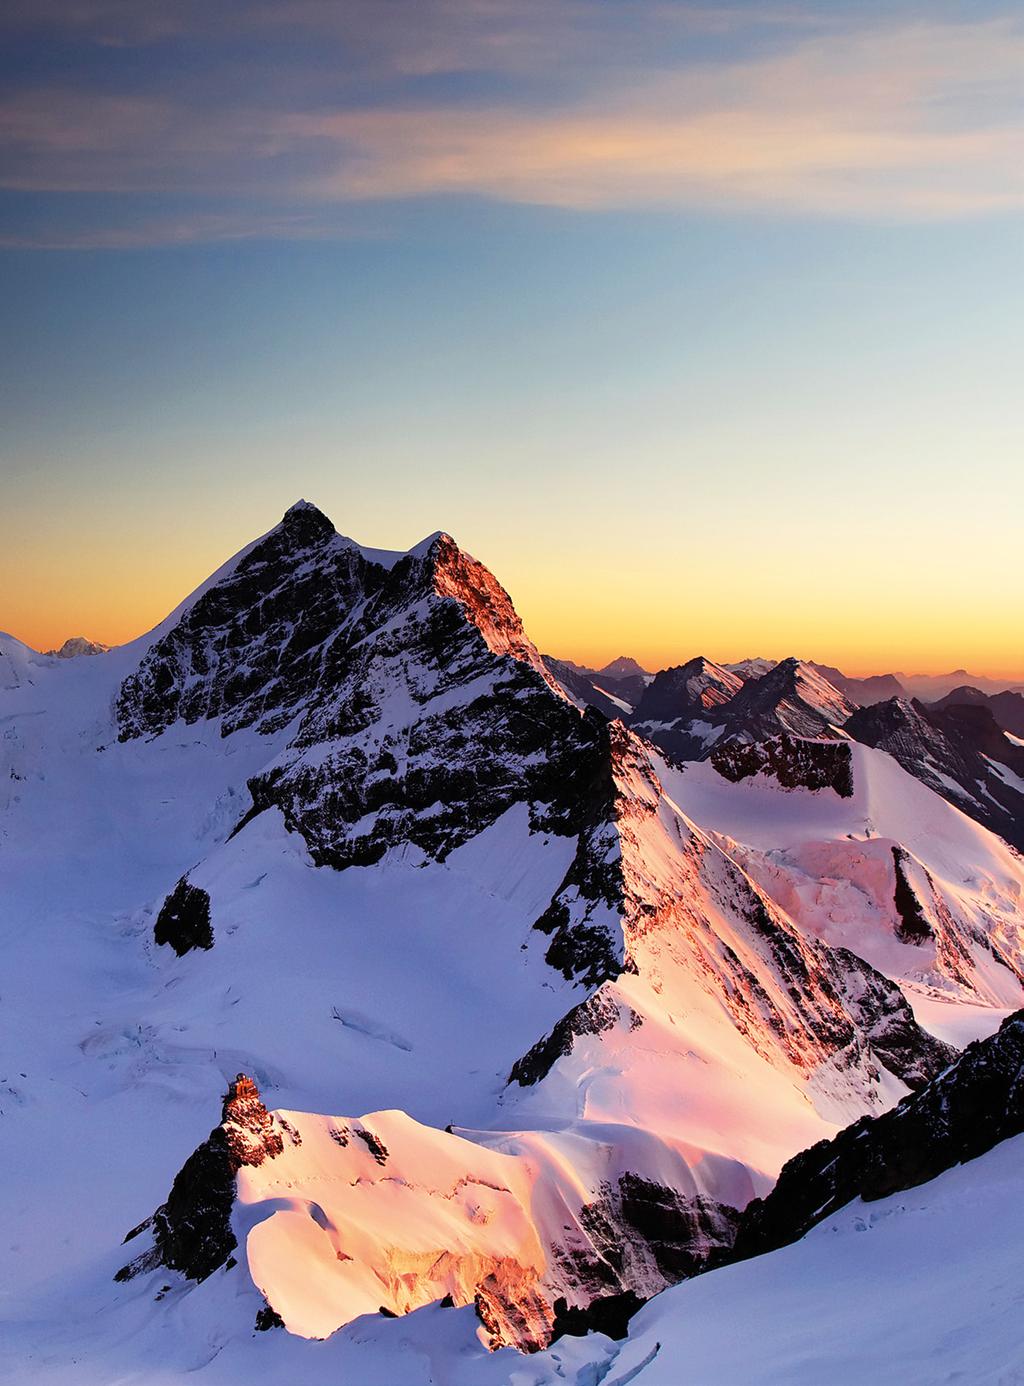 ZWEI STARKE PARTNER Eine Kooperation mit den Schweizer Jungfraubahnen soll das Know-how liefern, um im Sommer mehr internationale Gäste nach Sölden zu bringen.